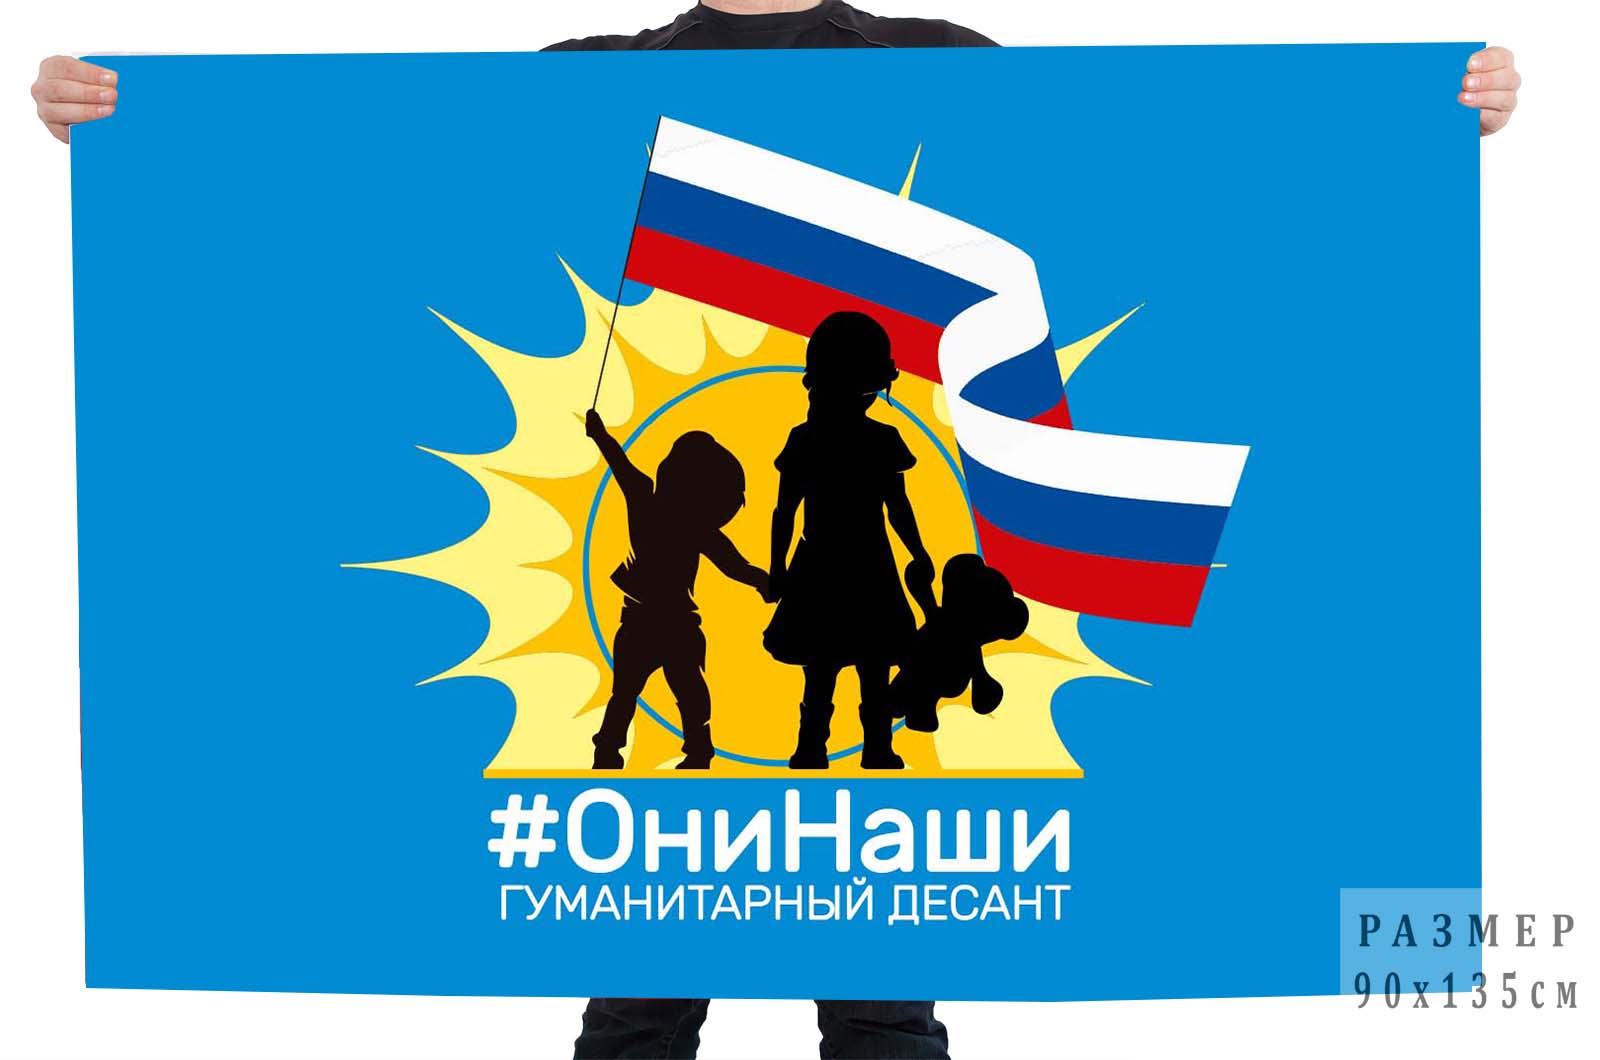 Купить флаг гуманитарный десант #ОниНаши